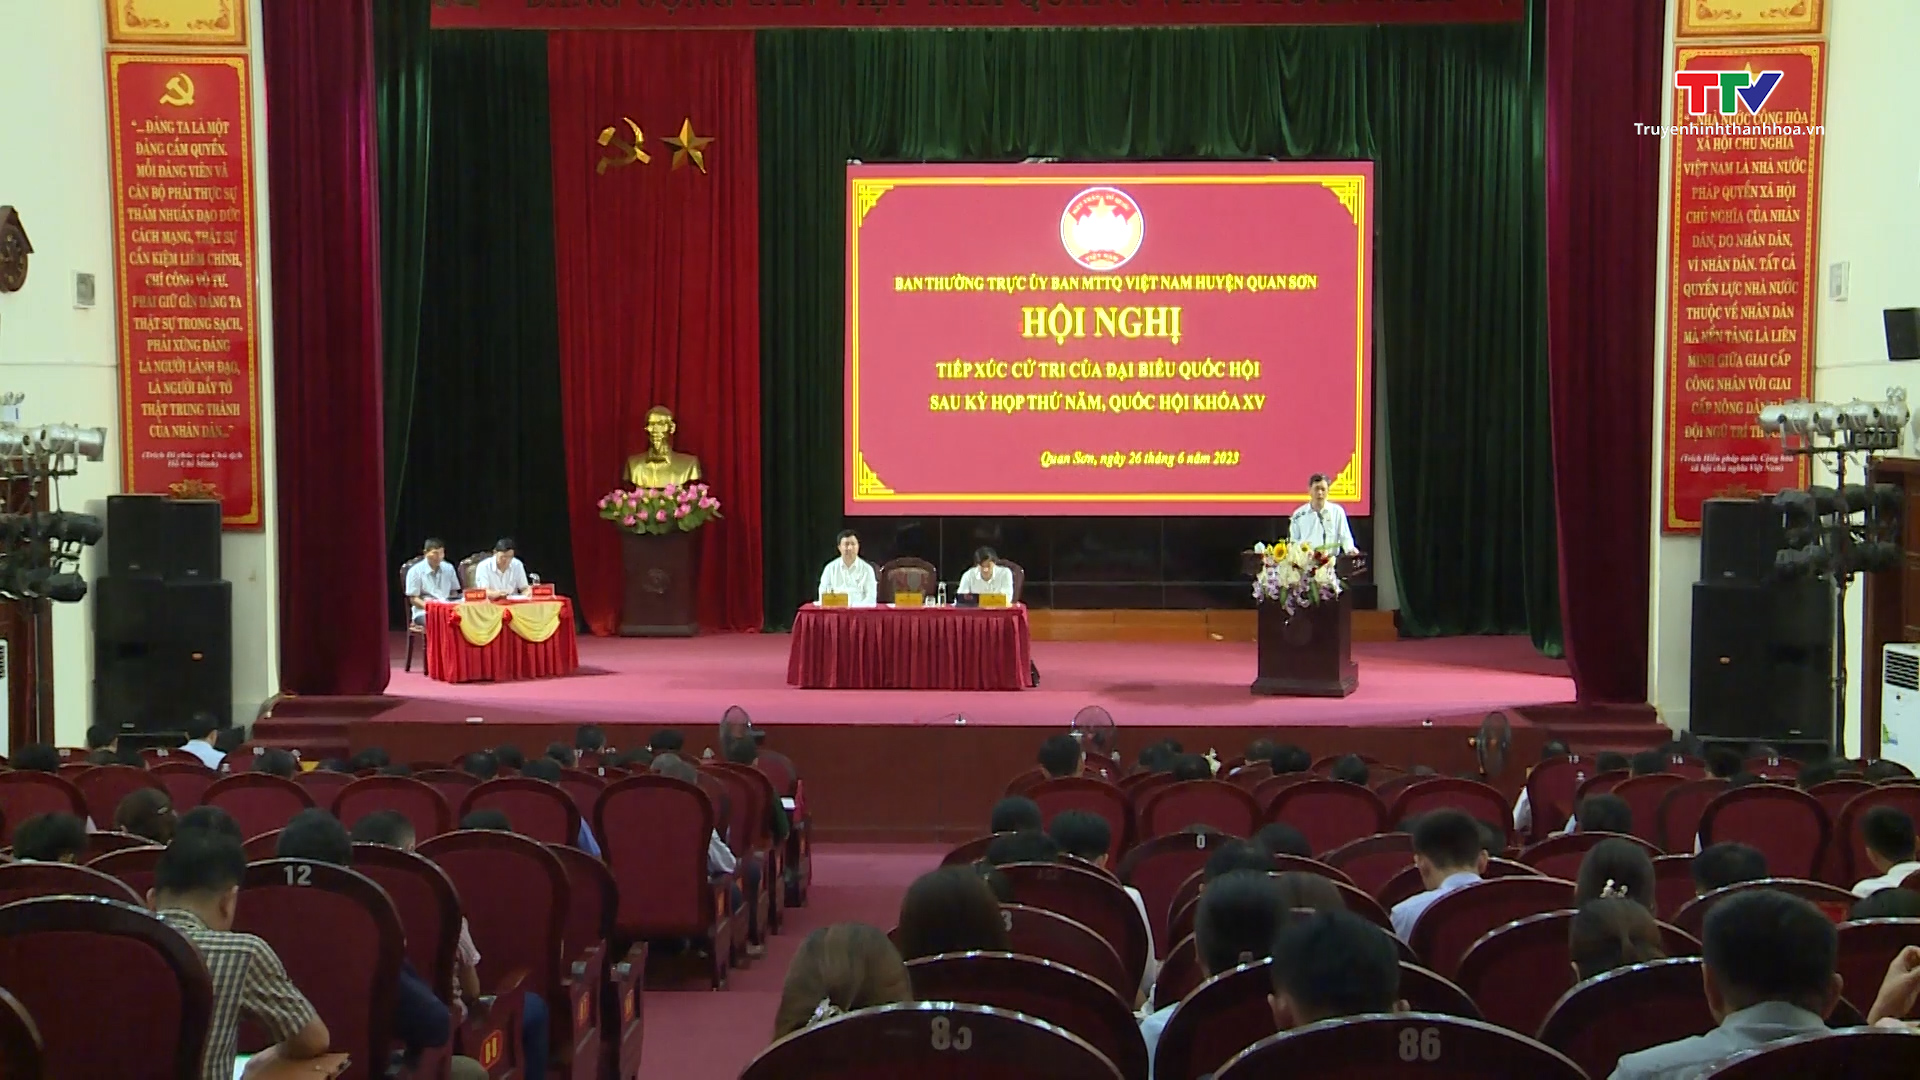 Đoàn đại biểu Quốc hội tỉnh Thanh Hoá tiếp xúc cử tri sau kỳ họp thứ 5, Quốc hội khoá XV - Ảnh 4.